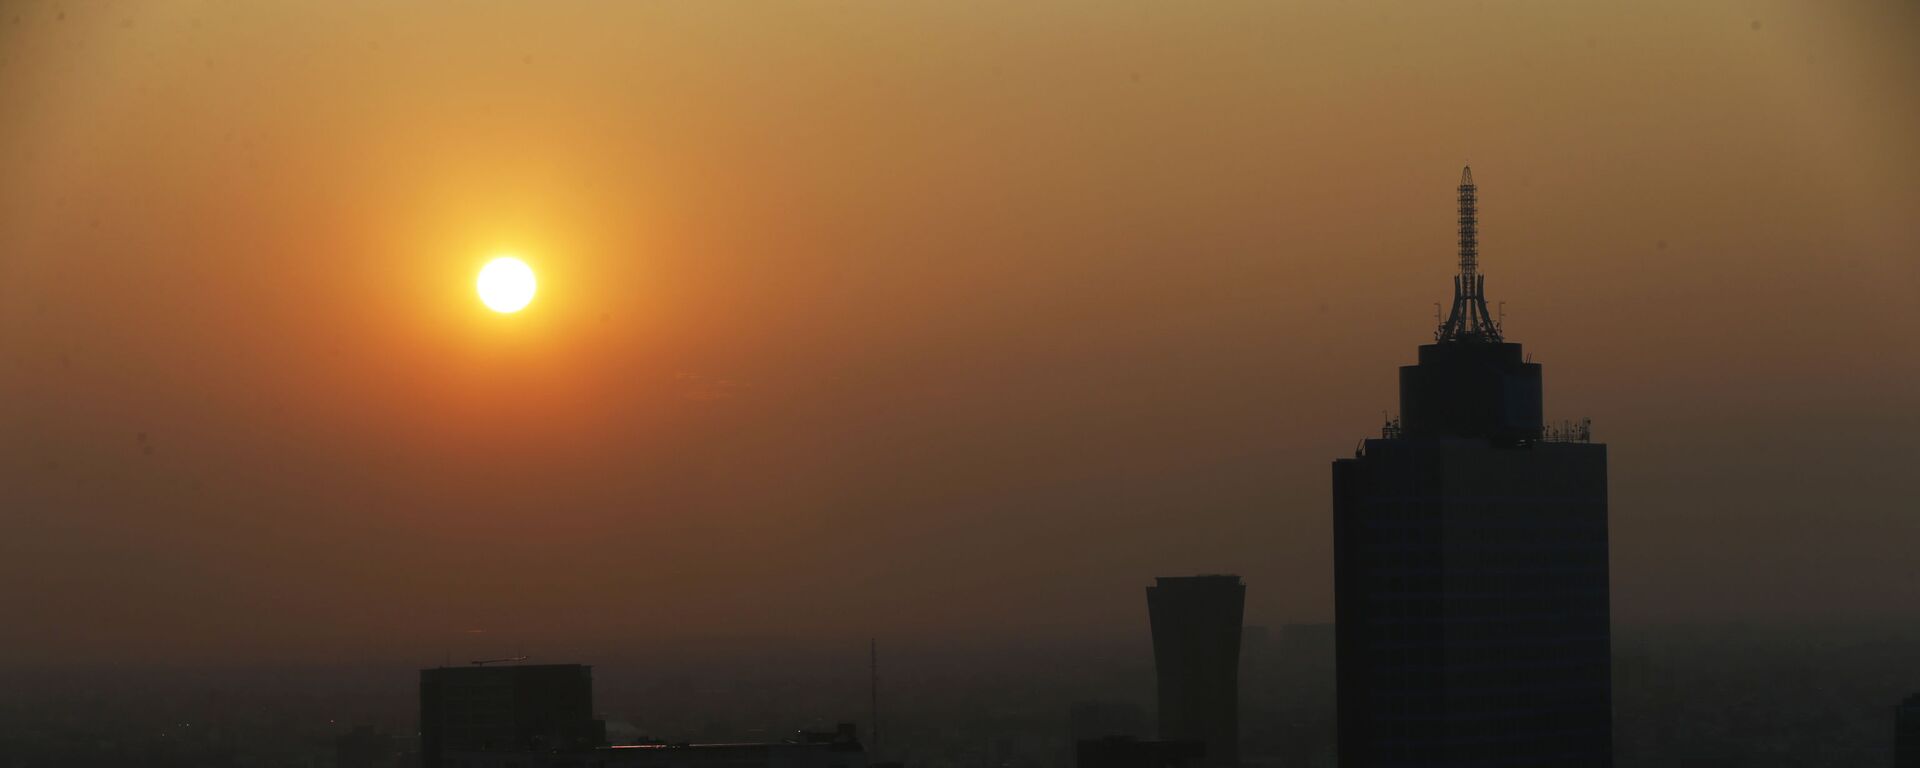 El sol sale en medio del esmog en la Ciudad de México - Sputnik Mundo, 1920, 31.10.2020